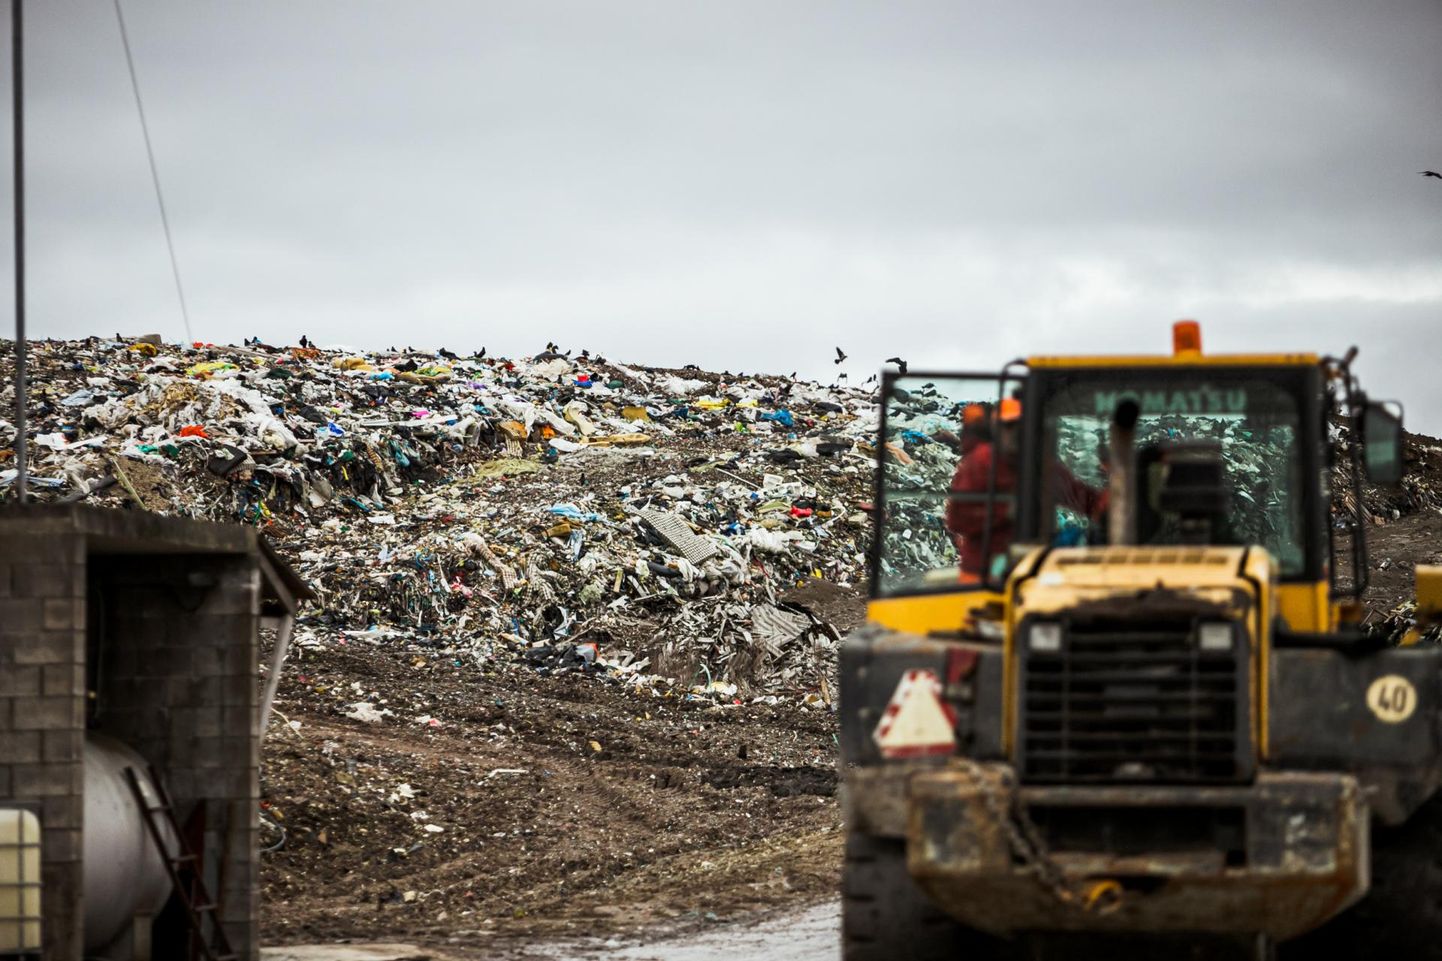 Praegu kehtiv Paikre kompleksluba ei näe ette võimalust rajada prügilasse jäätmetest vahekihte ja nimetada seda taaskasutamiseks.